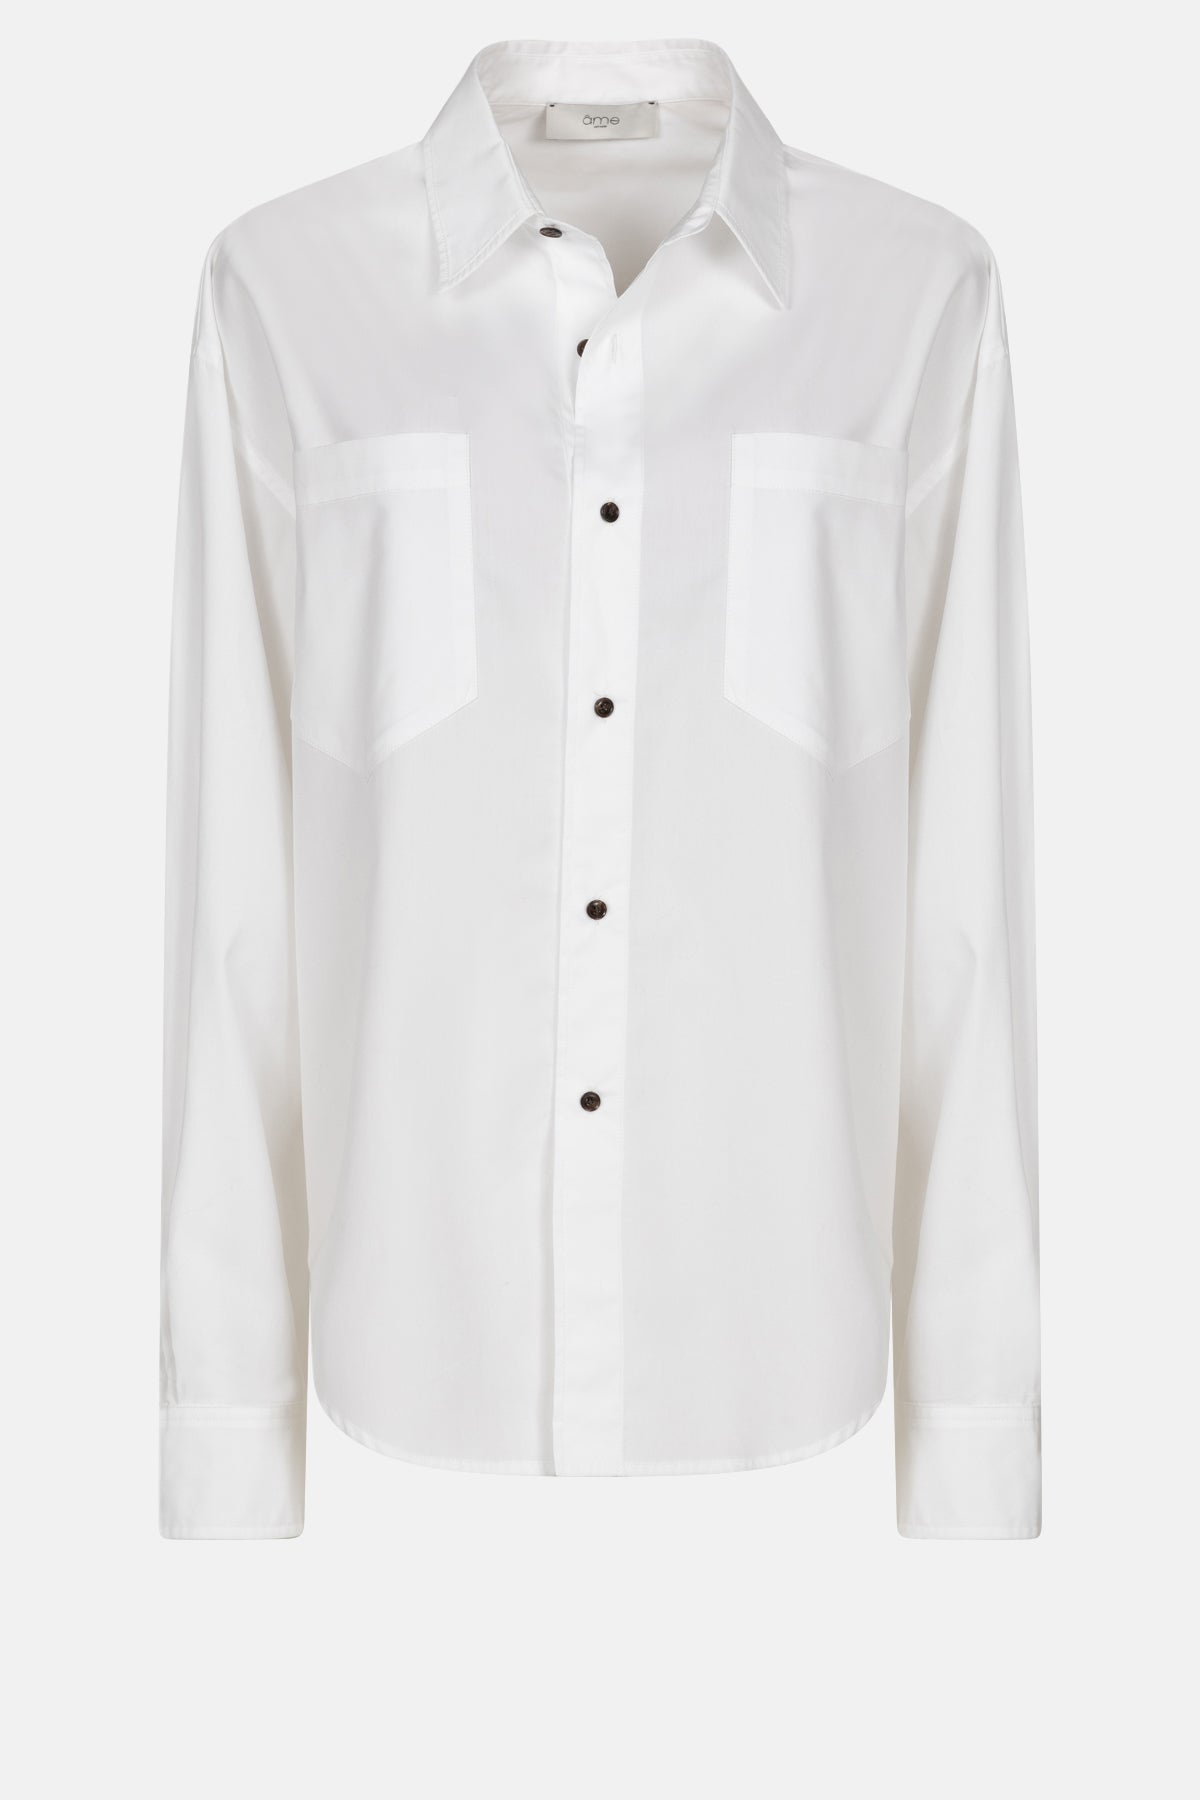 Karakter Shirt | White